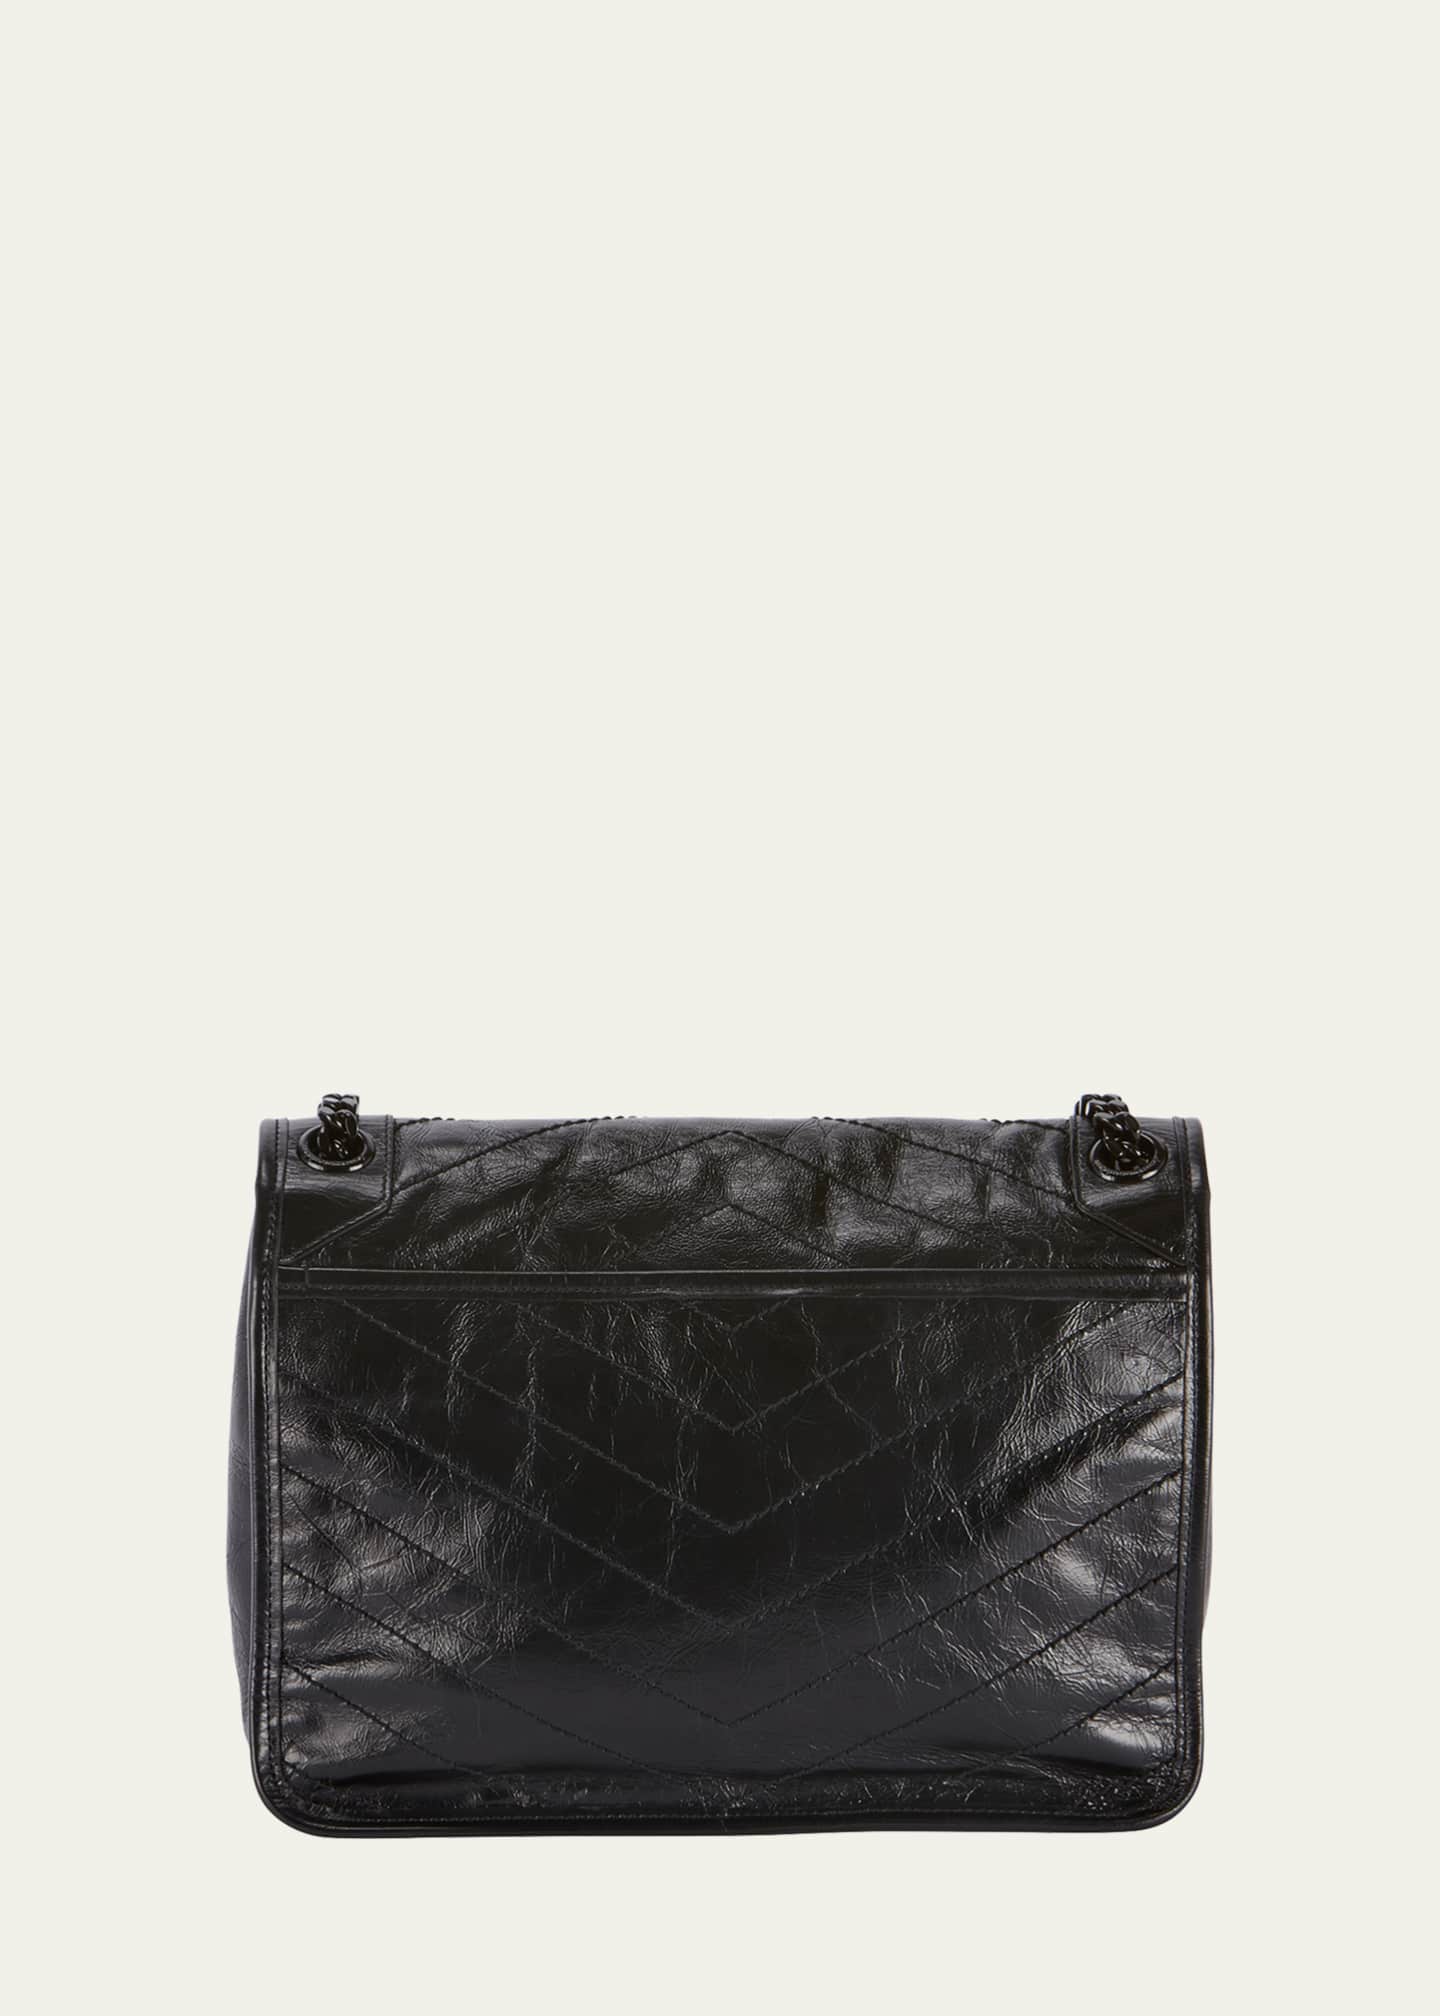 Saint Laurent Niki Medium Flap YSL Shoulder Bag in Crinkled Leather Image 2 of 5